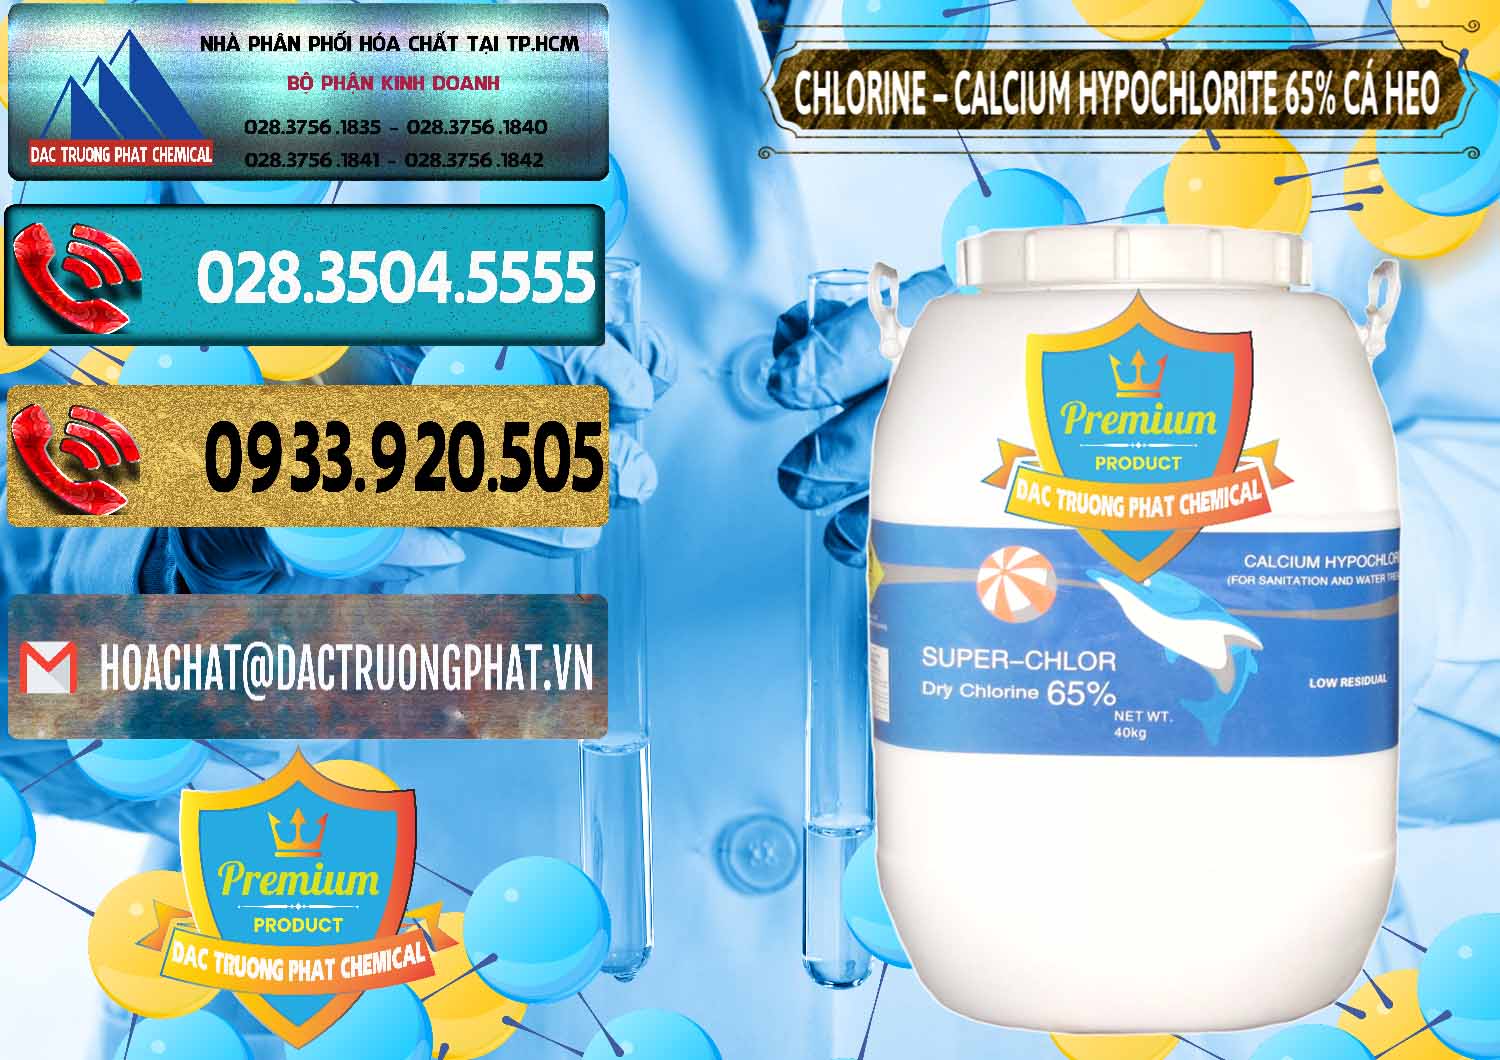 Chuyên cung ứng _ bán Clorin - Chlorine Cá Heo 65% Trung Quốc China - 0053 - Công ty chuyên cung cấp ( kinh doanh ) hóa chất tại TP.HCM - hoachatdetnhuom.com